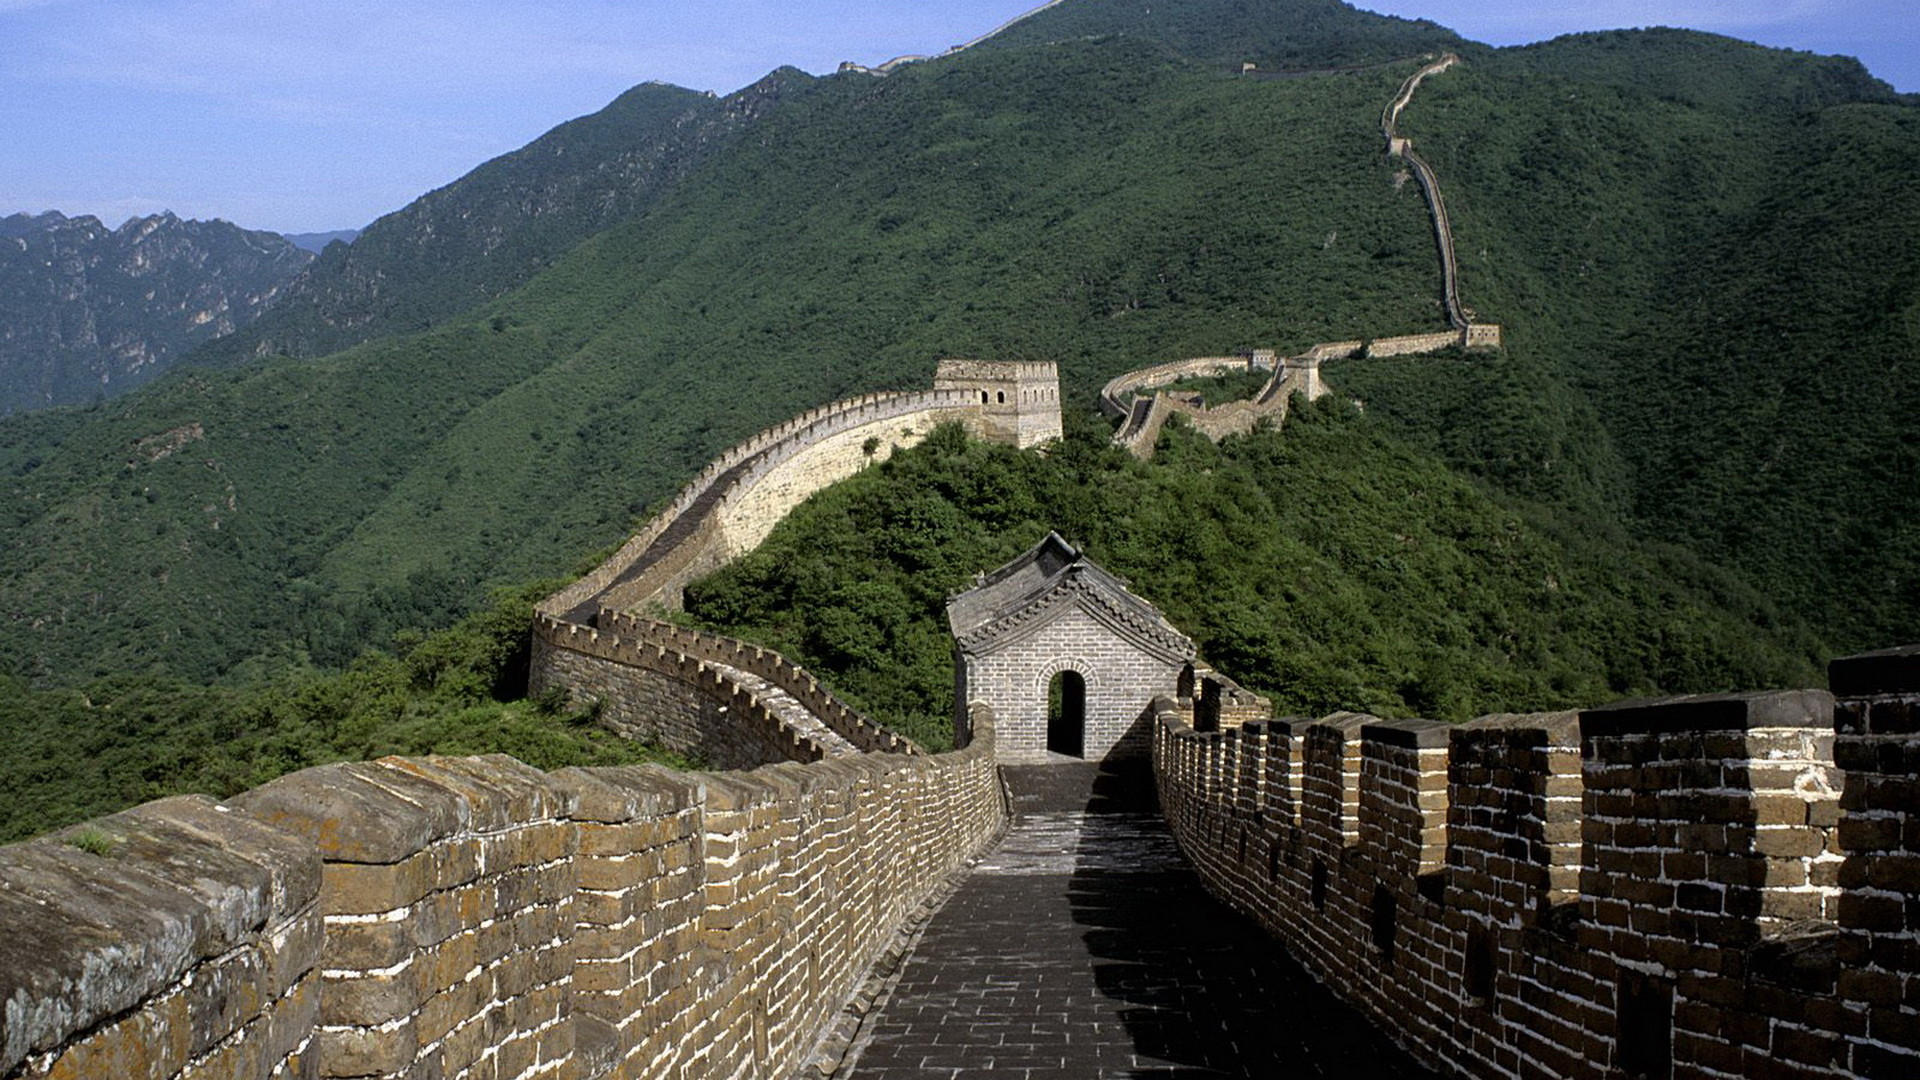 1920x1080 Menschengemacht - Chinesische Mauer Volksrepublik China Wallpaper.  Herunterladen! NÃ¤chste Wallpaper Â· Vorherige Wallpaper. The great wall ...